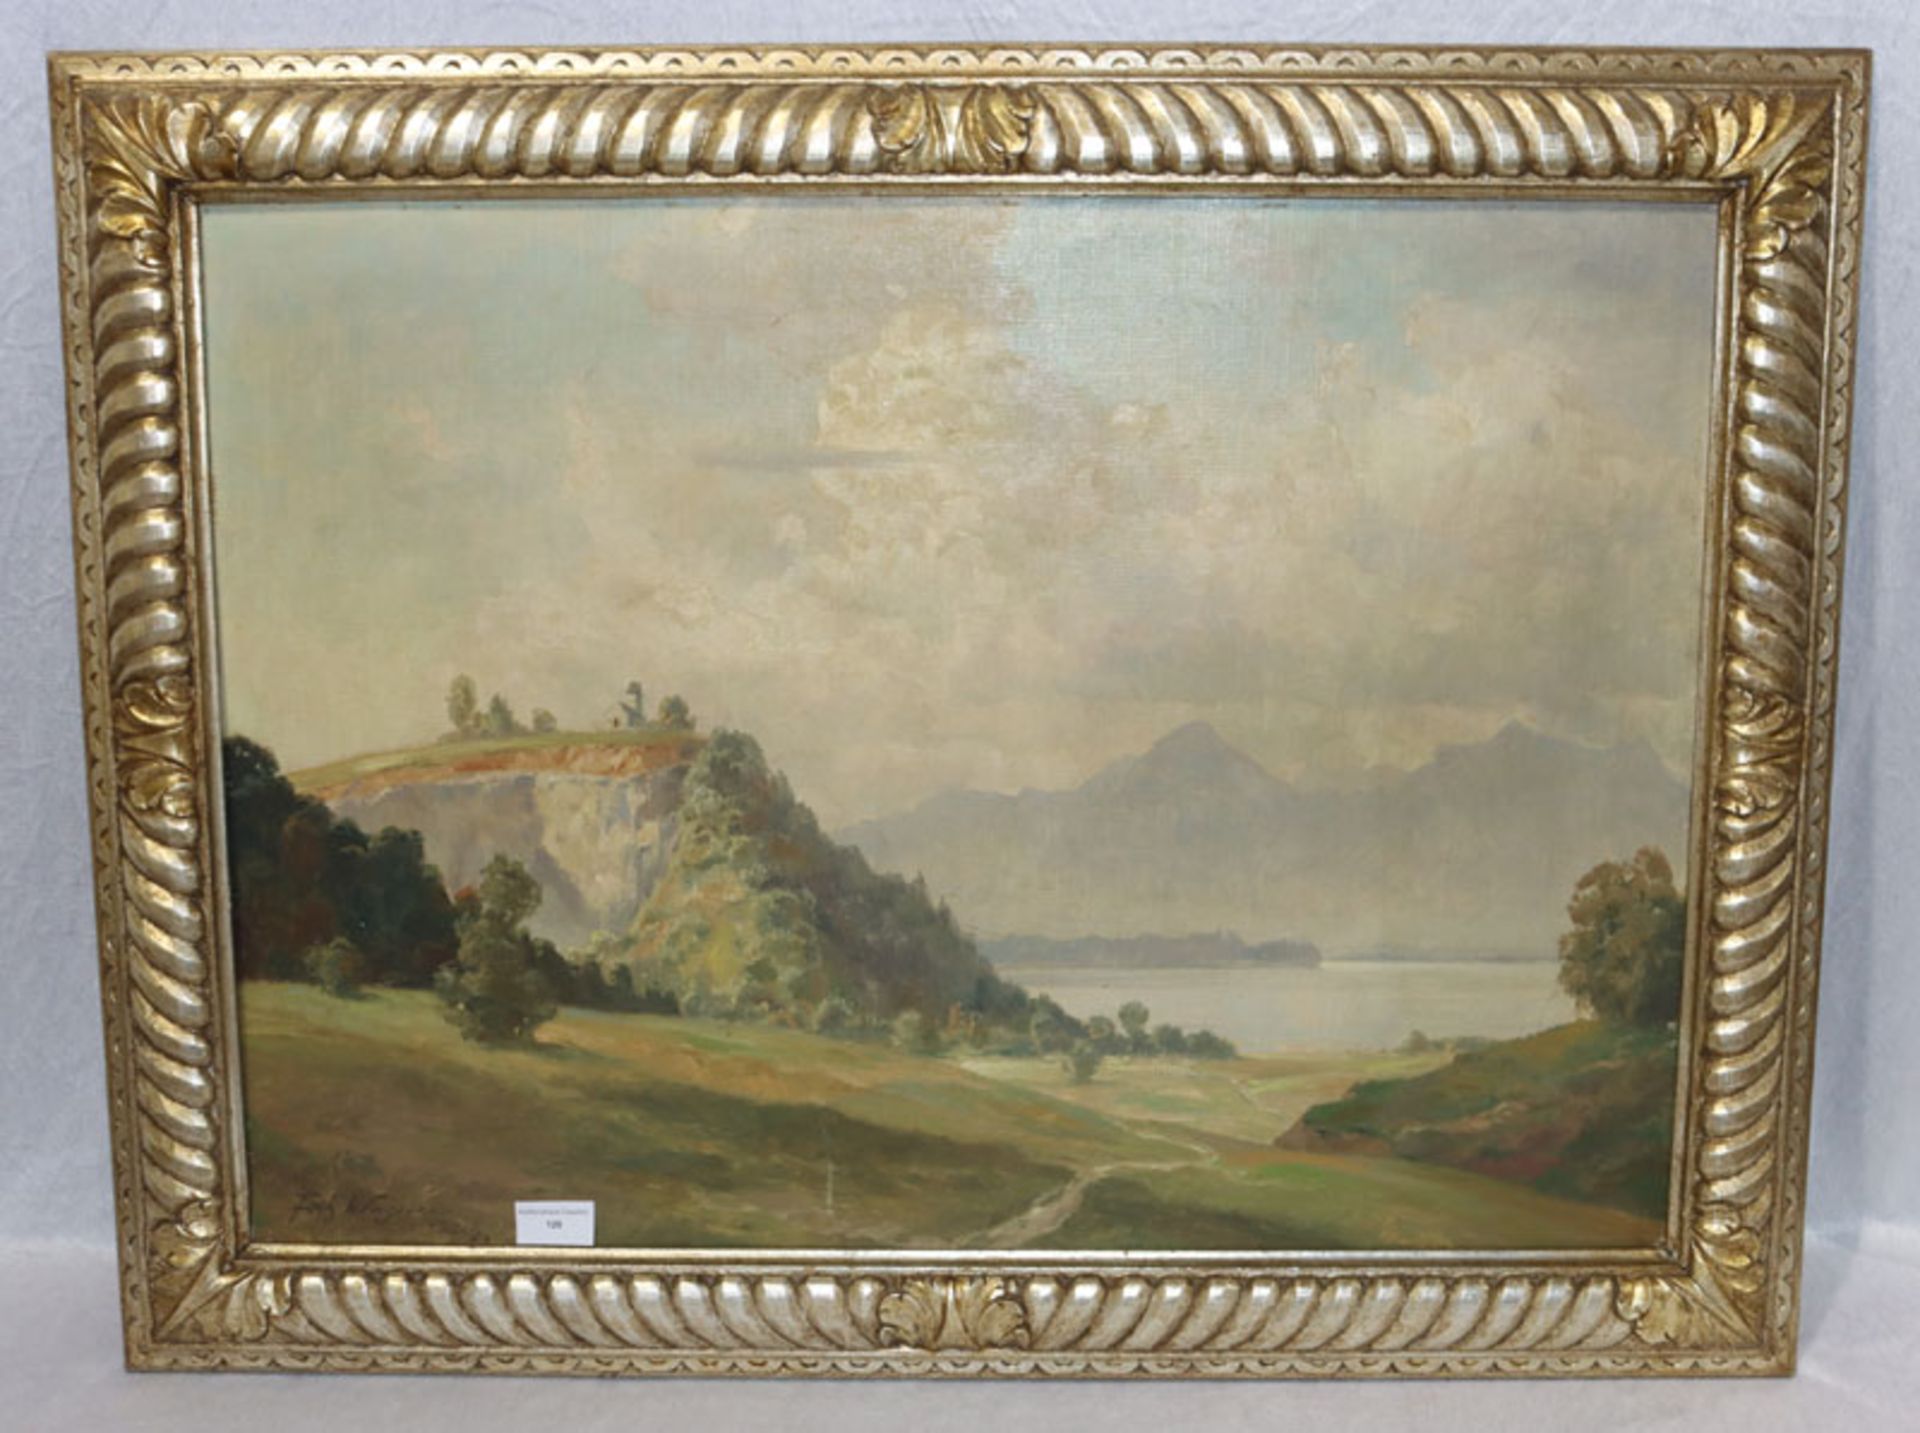 Gemälde ÖL/Malkarton 'Landschafts-Szenerie', signiert Fritz Wagner, München, * 1896 München + 1939